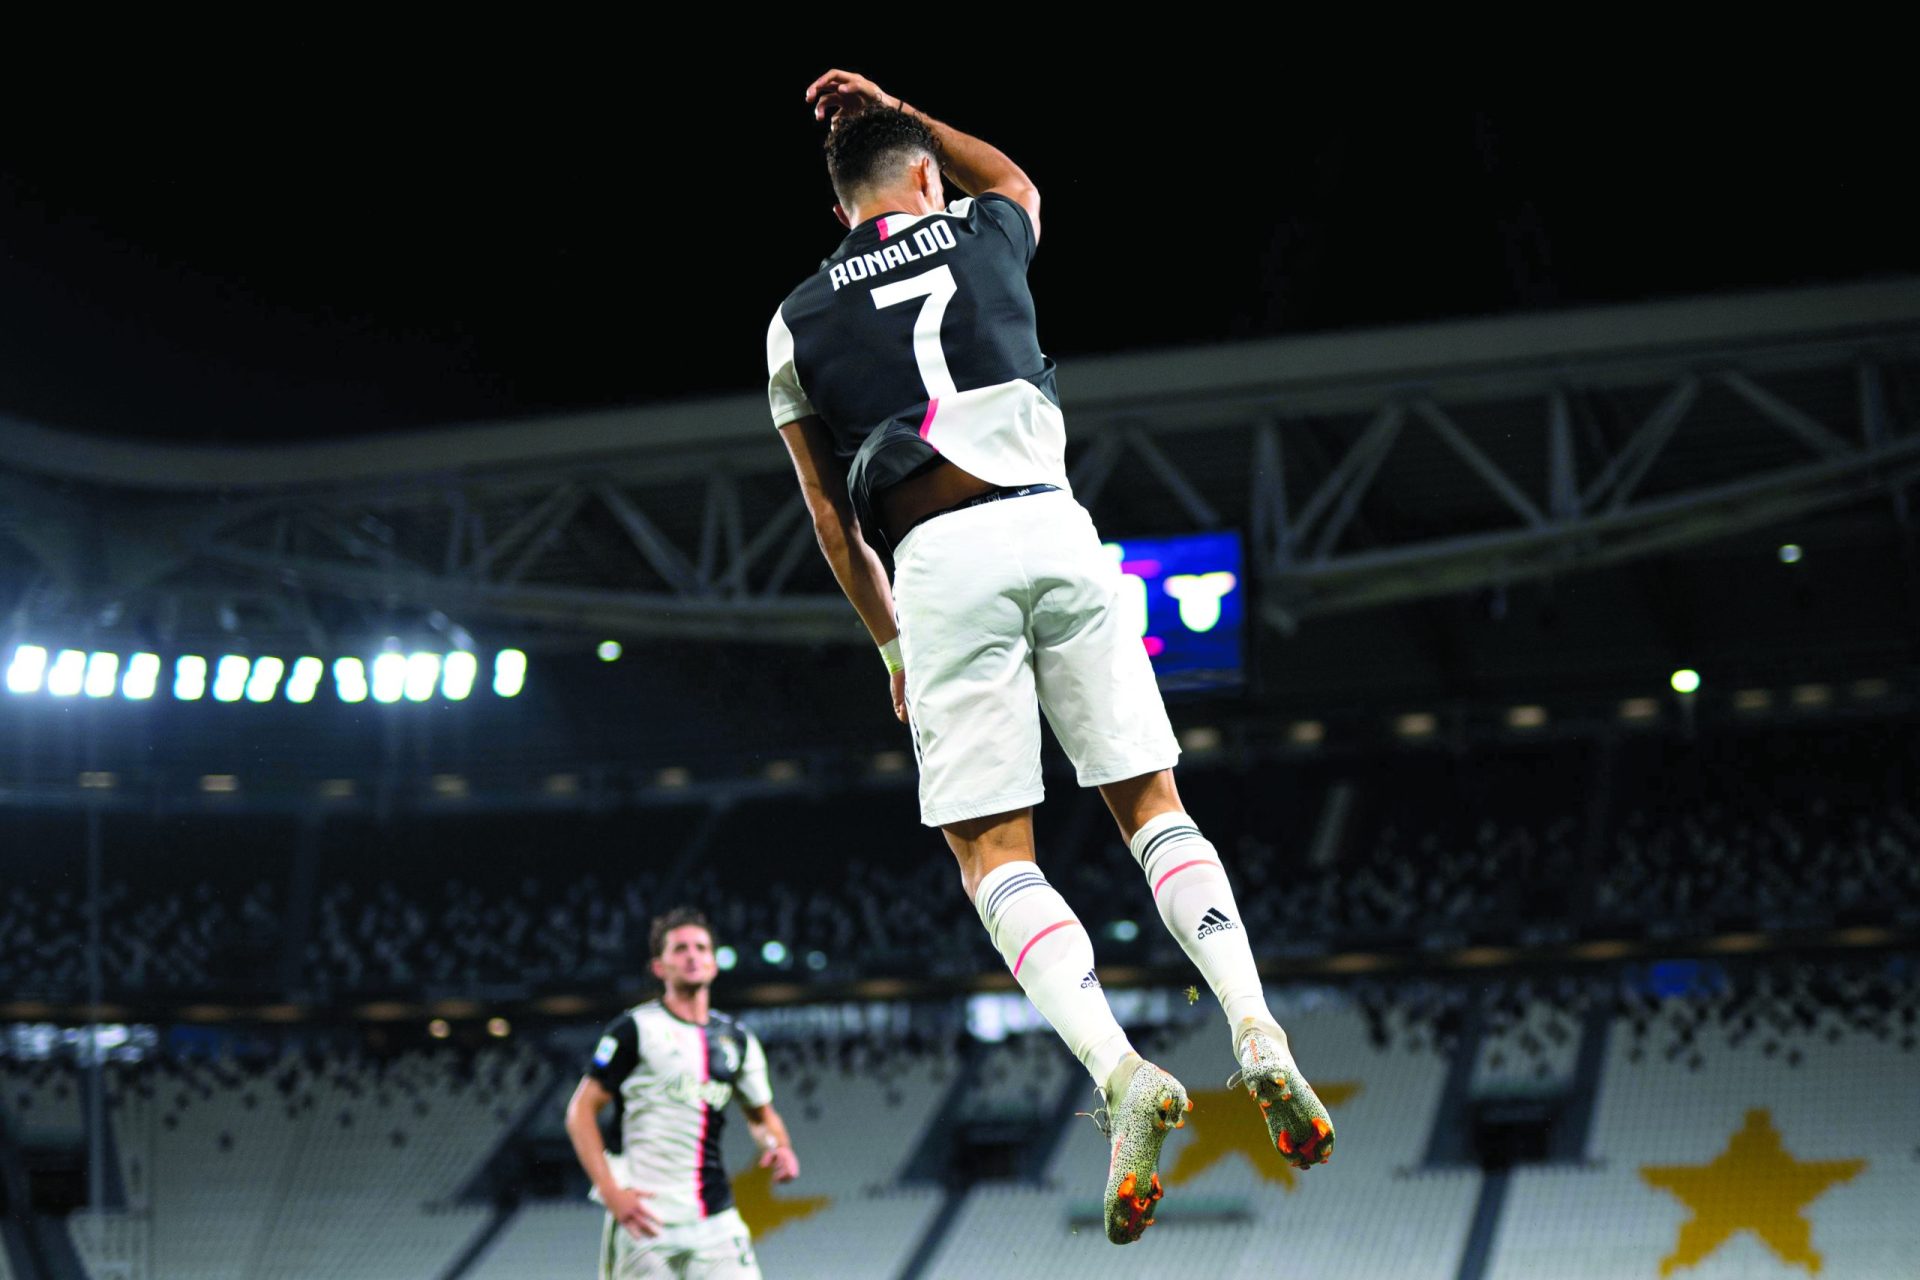 Bota de Ouro. Cristiano Ronaldo dá o penúltimo passo rumo à liderança